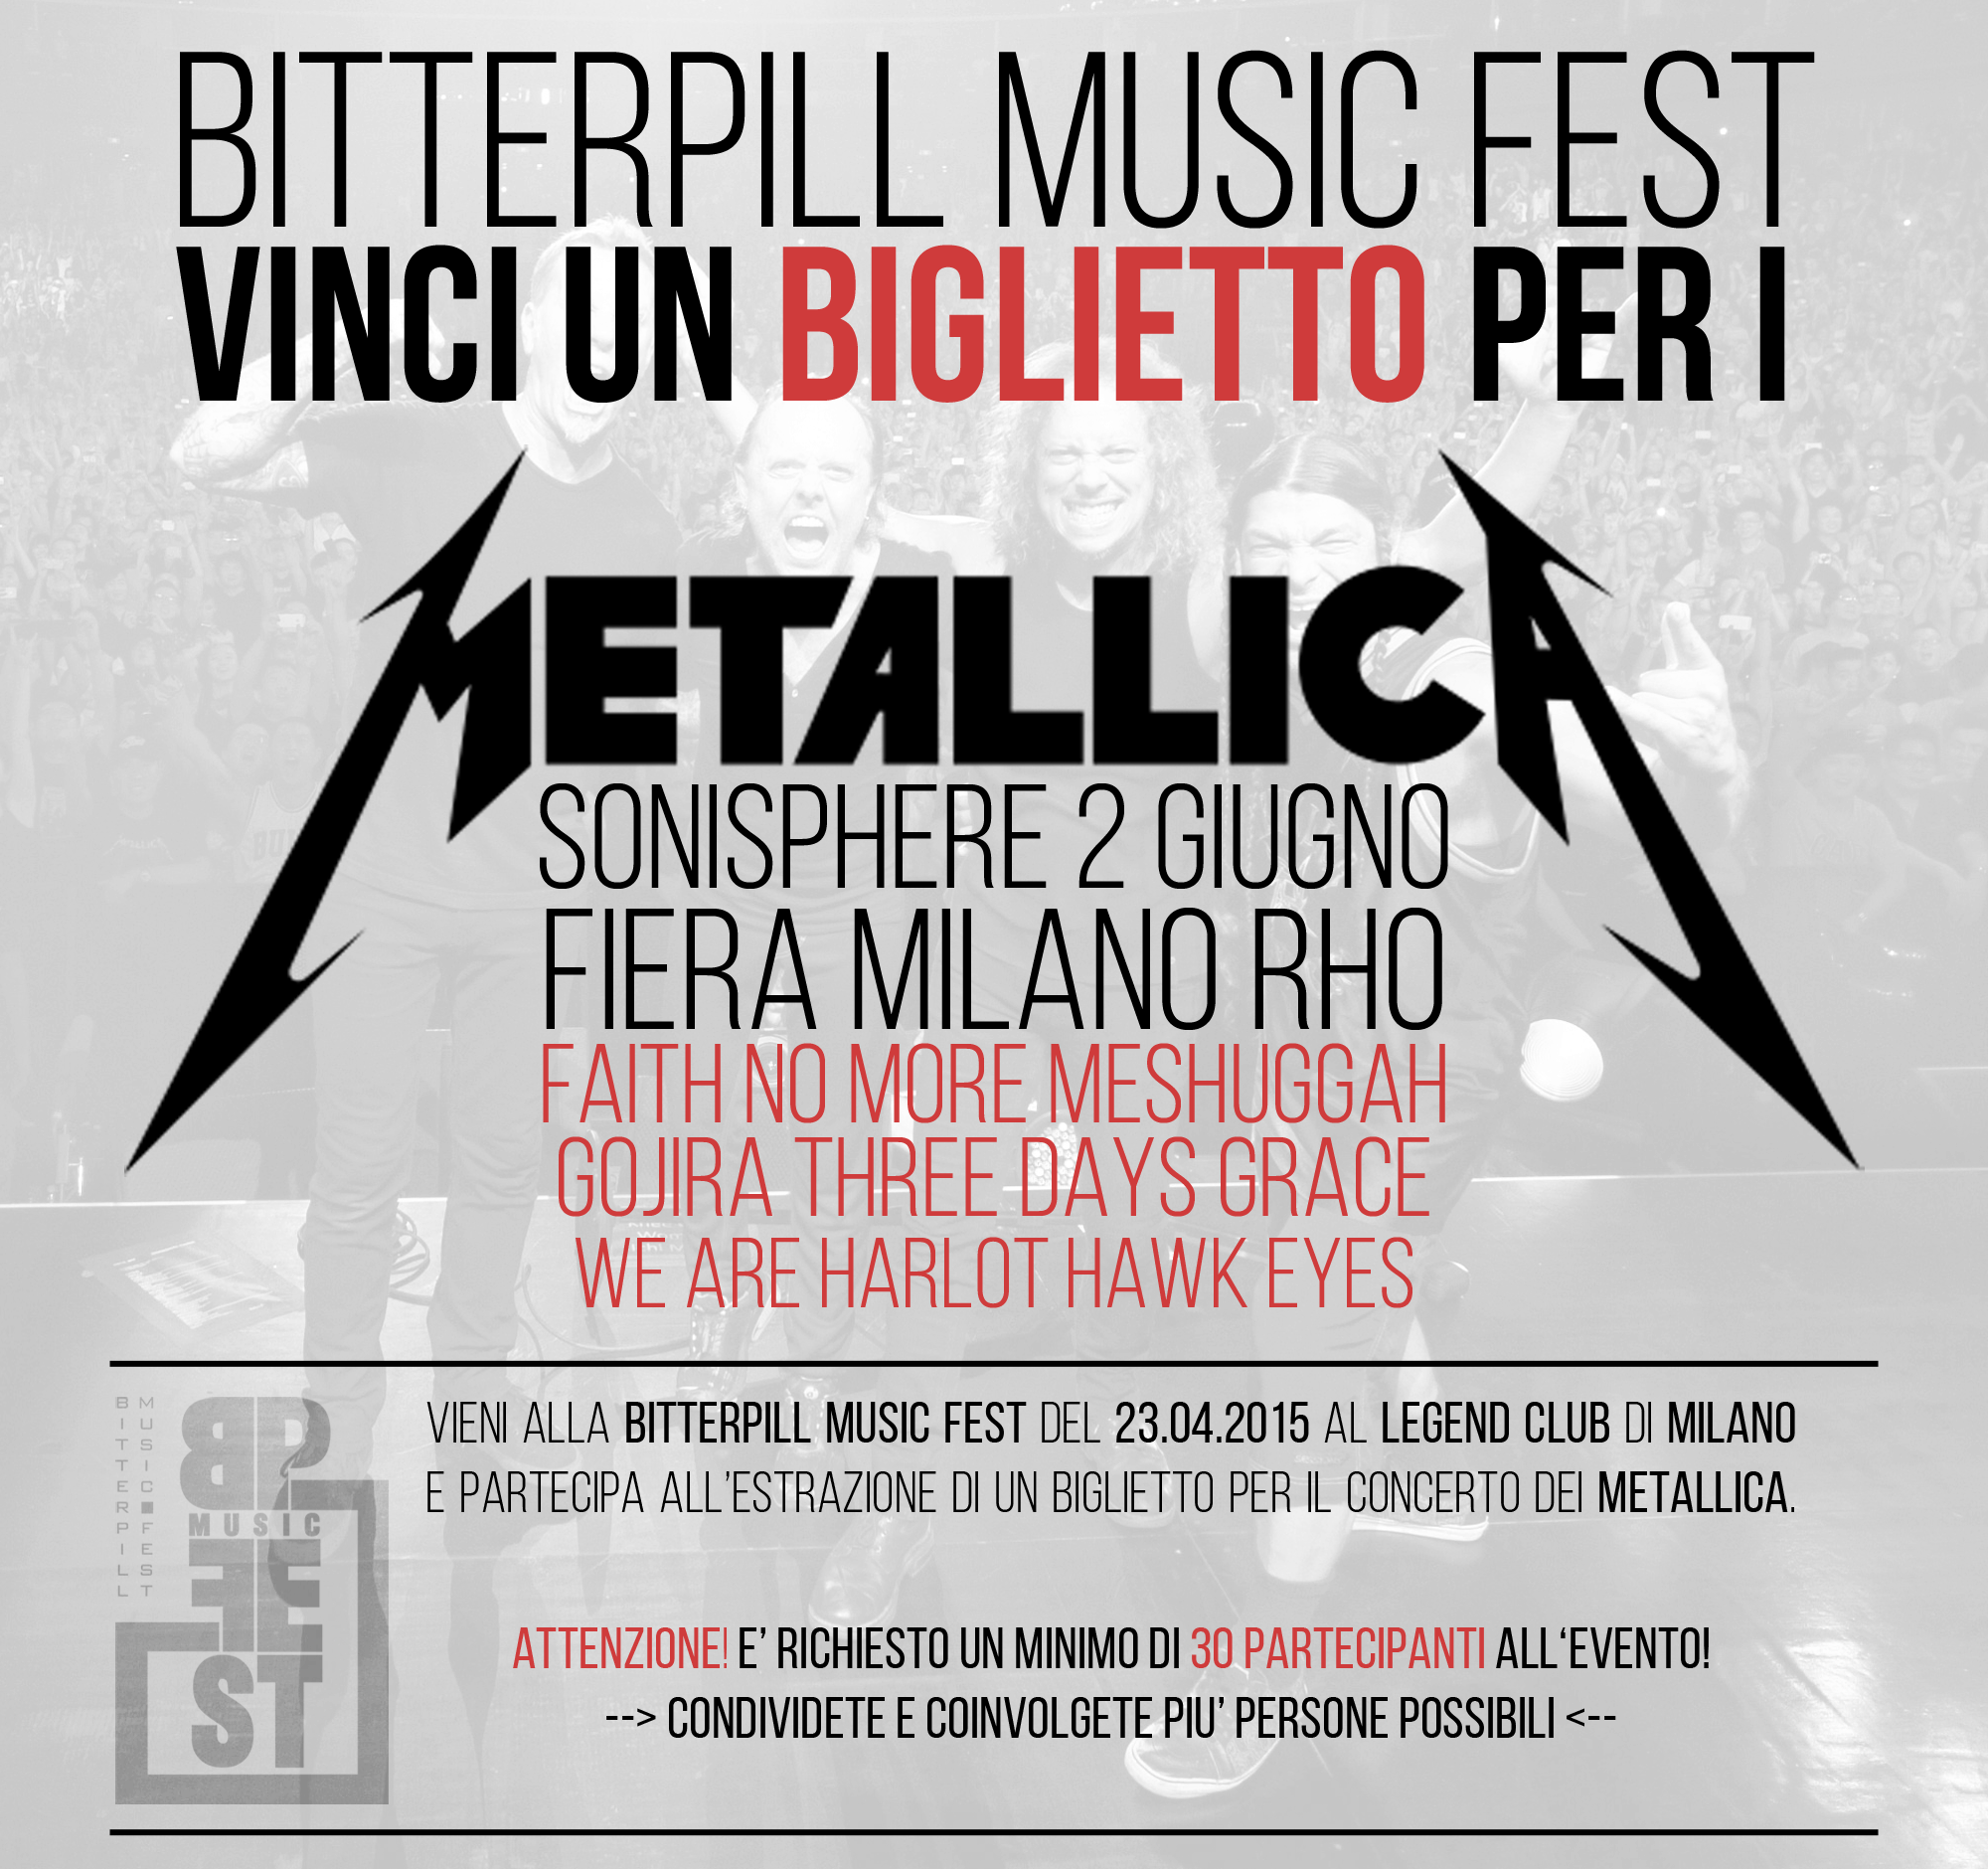 Bitterpill Music Fest Metallica